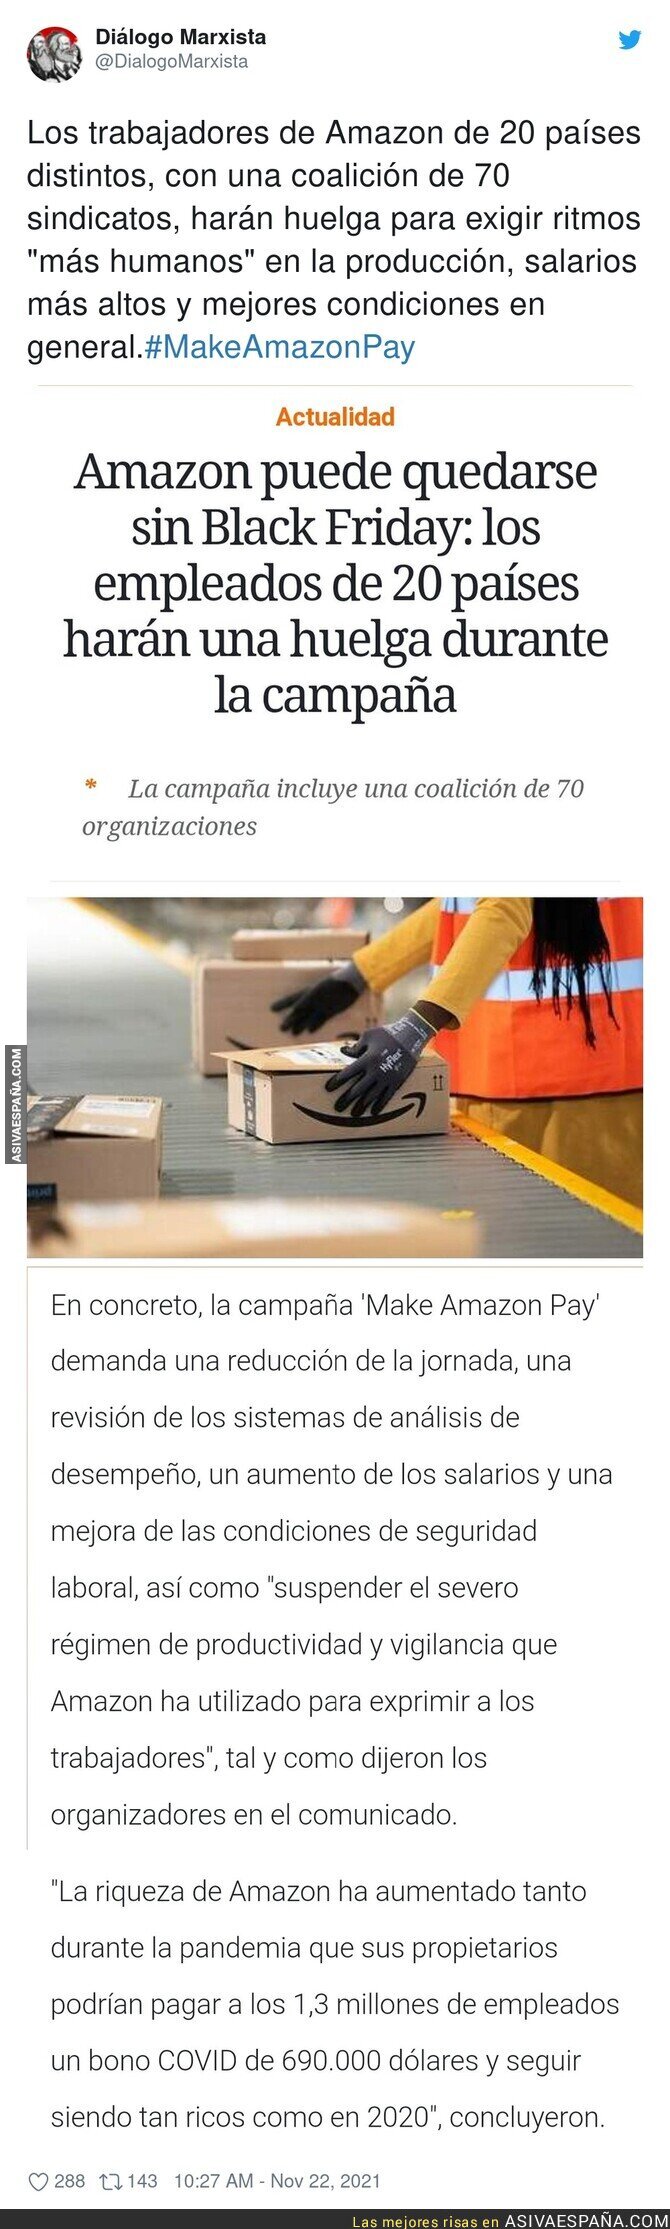 La huelga que prometen los trabajadores de Amazon durante la campaña del Black Friday